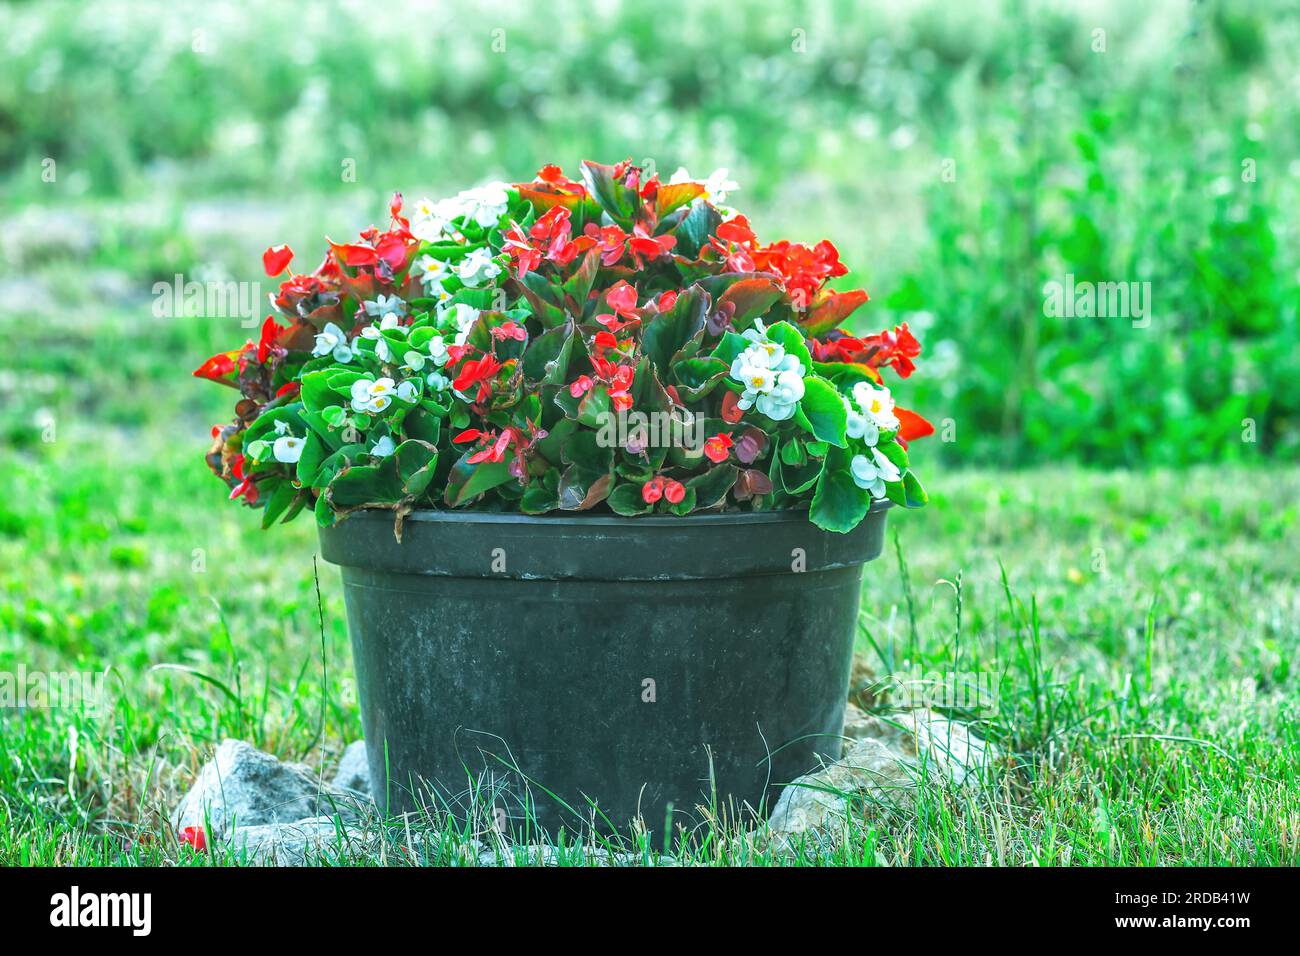 Les fleurs rouges et blanches de Begonia poussent dans un grand pot en plastique noir dans la cour d'été. Fleur colorée en pot dans le jardin d'automne par le backgroun d'herbe floue verte Banque D'Images